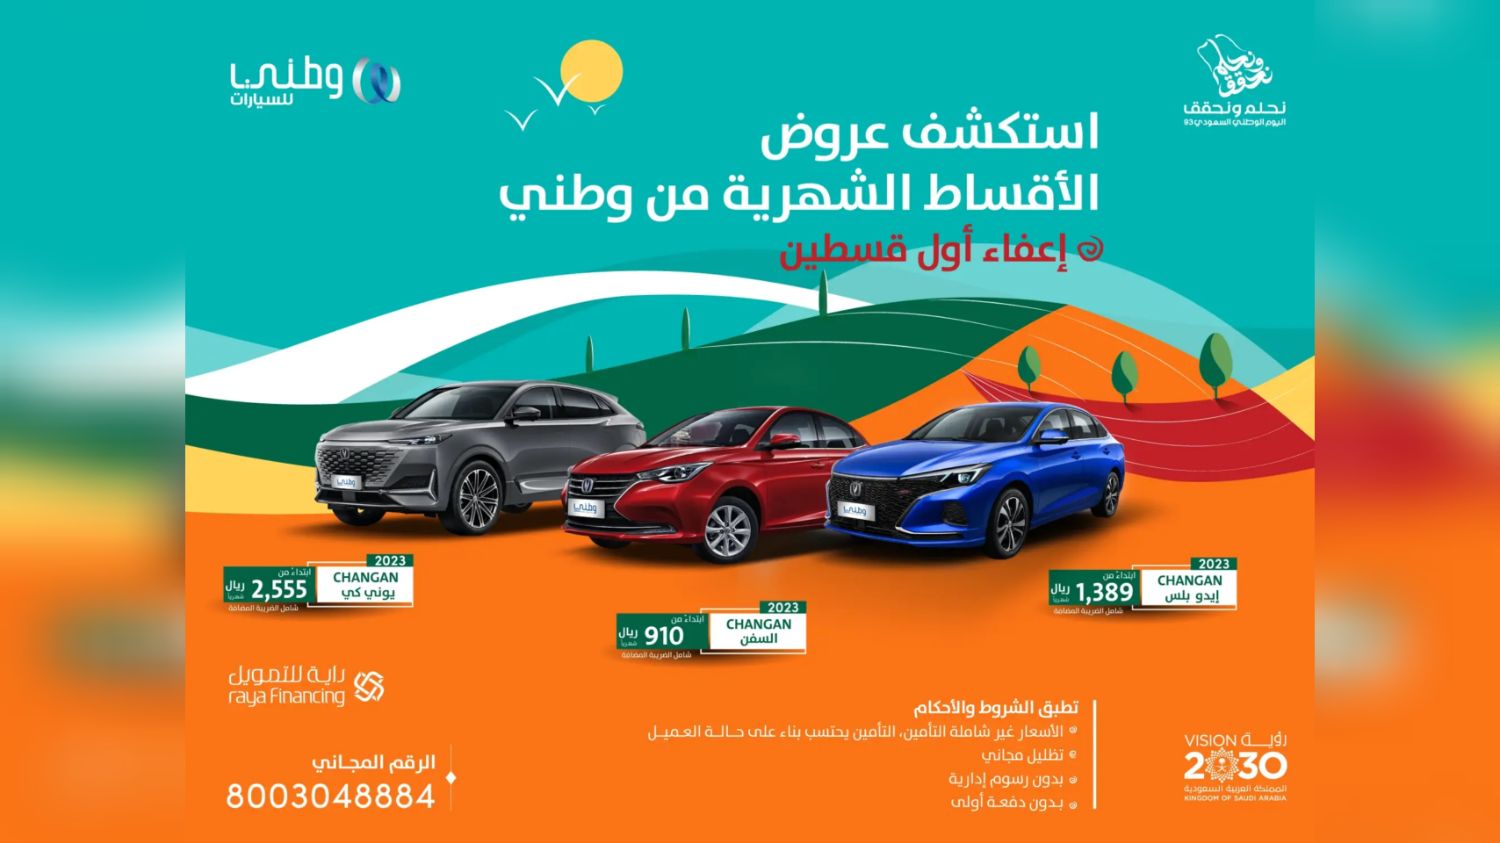 إلحق أضخم عروض اليوم الوطني 93 للسيارات في السعودية من شركة عبداللطيف جميل وغيرها برخص التراب 